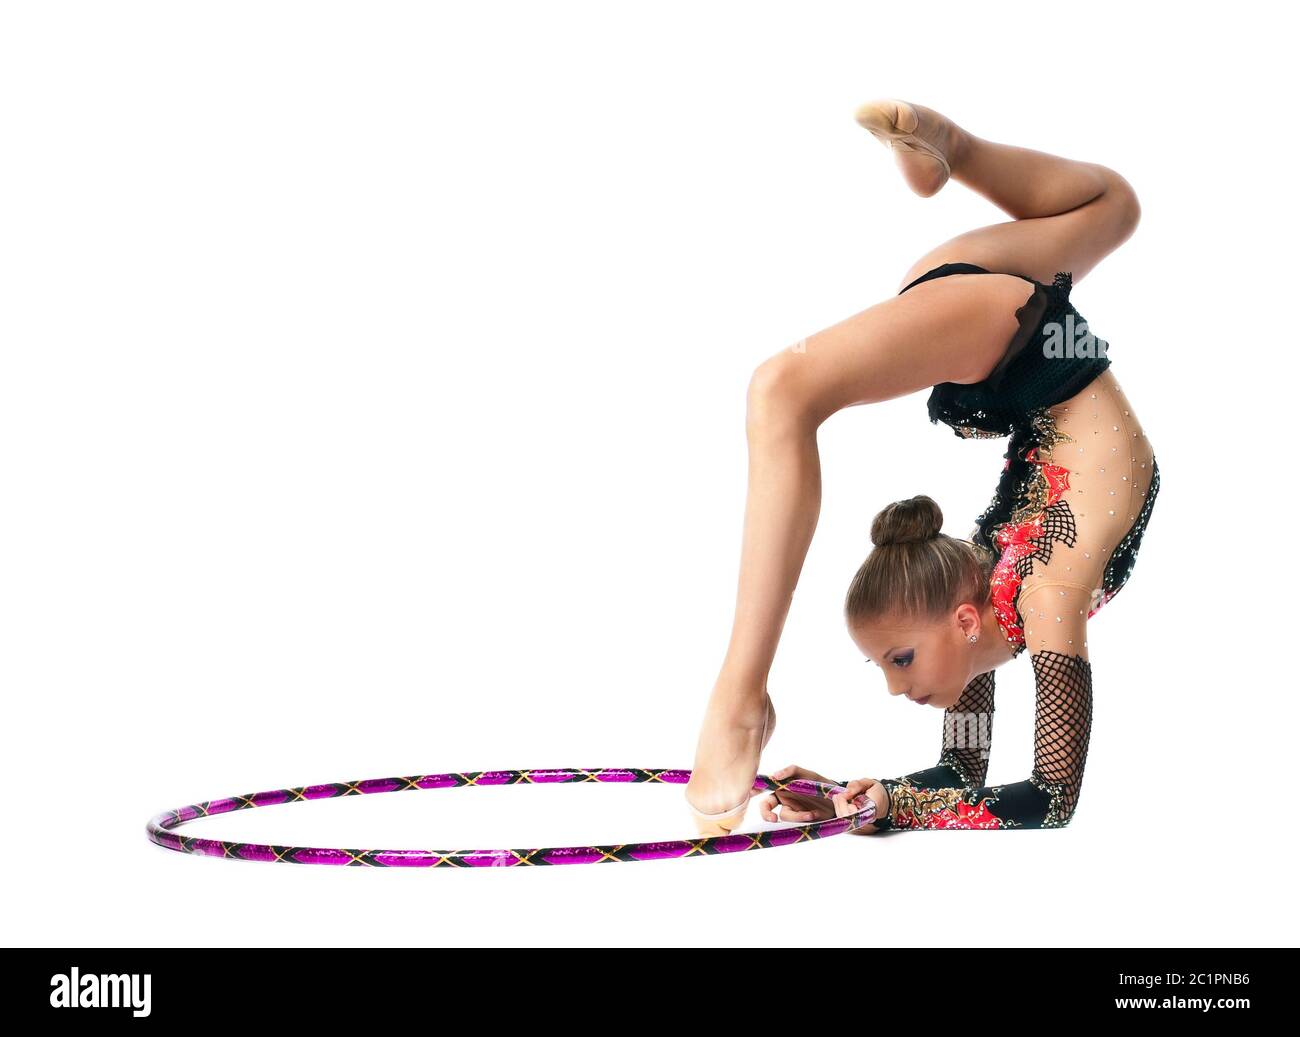 Jeune fille show danse gymnastique avec hoop Banque D'Images